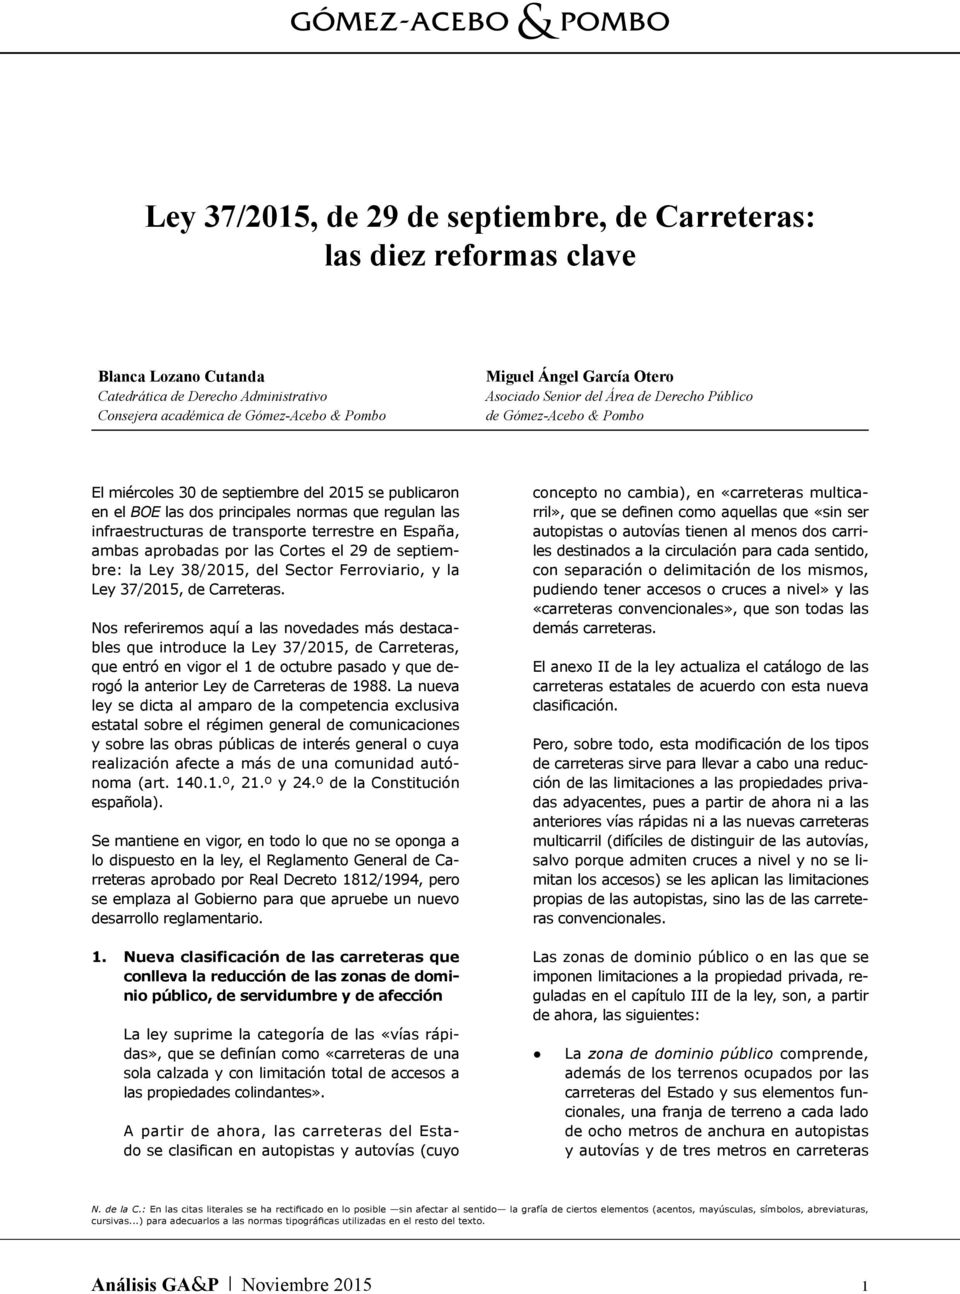 transporte terrestre en España, ambas aprobadas por las Cortes el 29 de septiembre: la Ley 38/2015, del Sector Ferroviario, y la Ley 37/2015, de Carreteras.